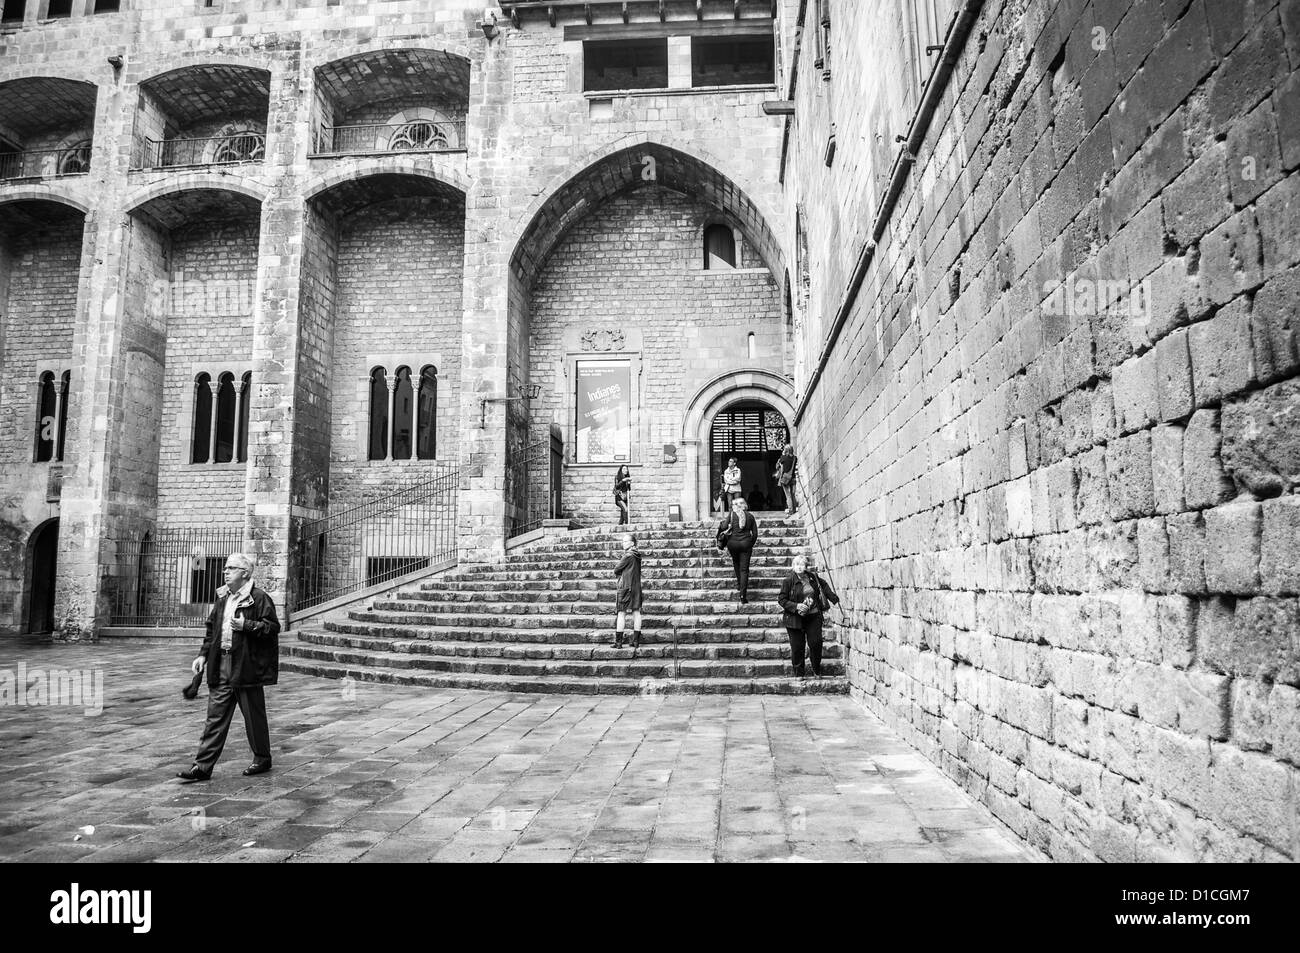 À l'entrée imposante des bâtiments abritant le Musée d'histoire de Barcelone. La section d'excavation de l'ancienne ville romaine sur l'affichage à l'intérieur.B&W Banque D'Images